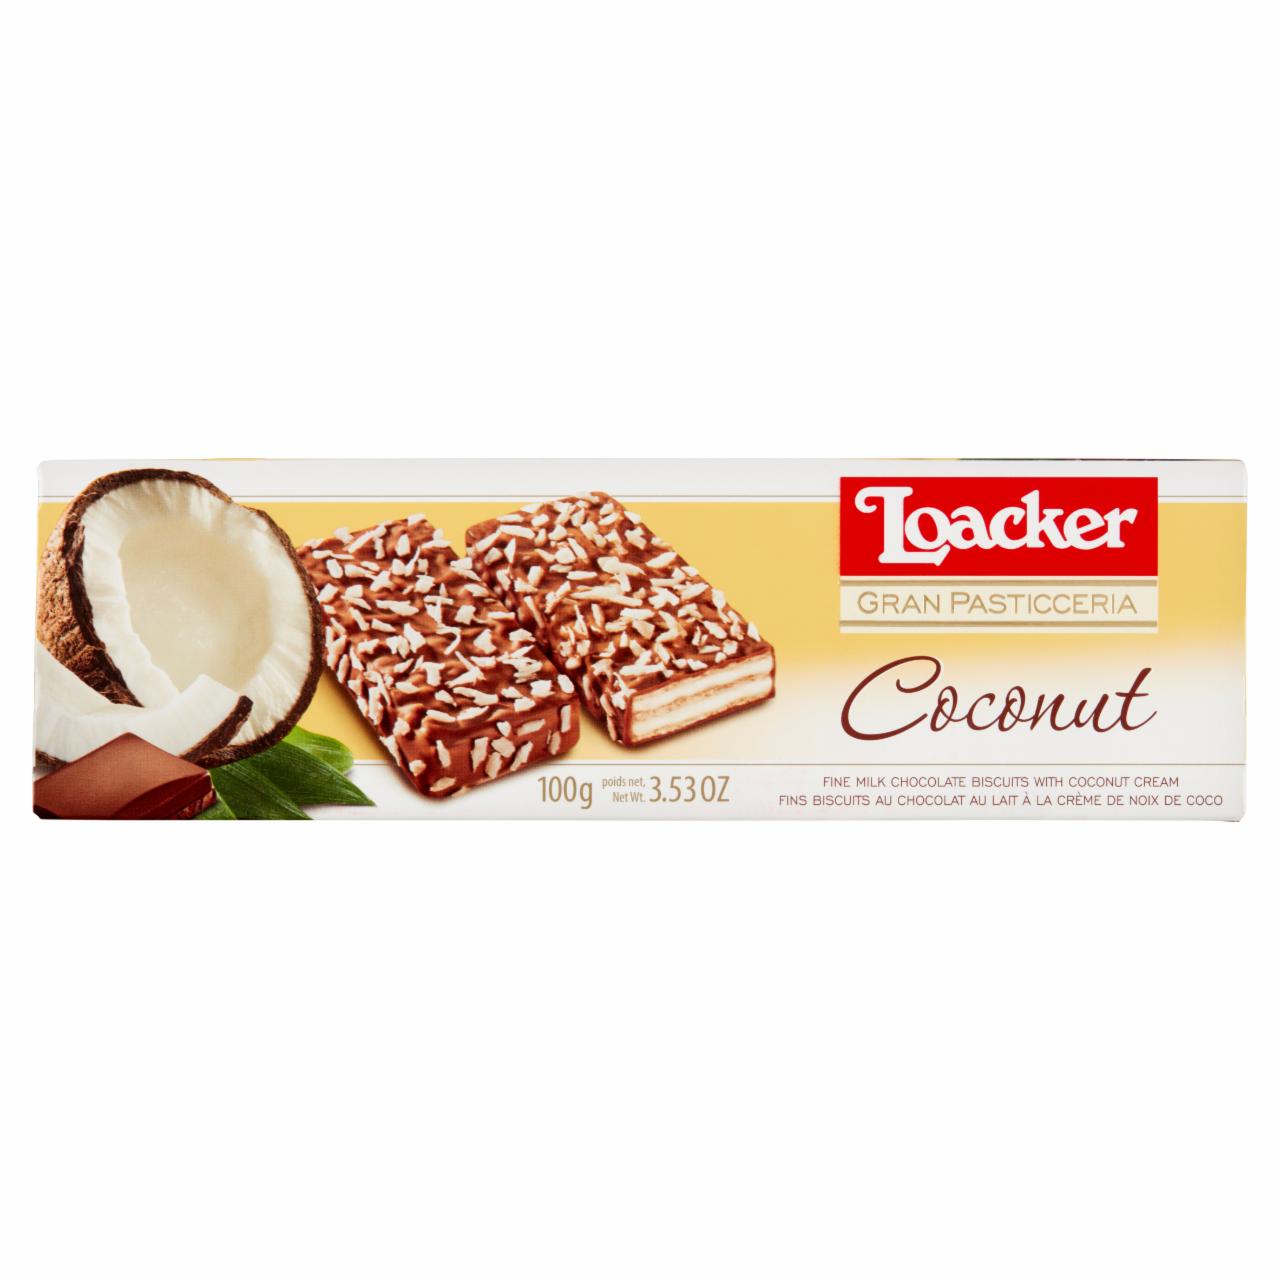 Képek - Loacker Patisserie Coconut finom kókuszos szelet tejcsokoládé bevonattal és kókuszdarabokkal 100 g